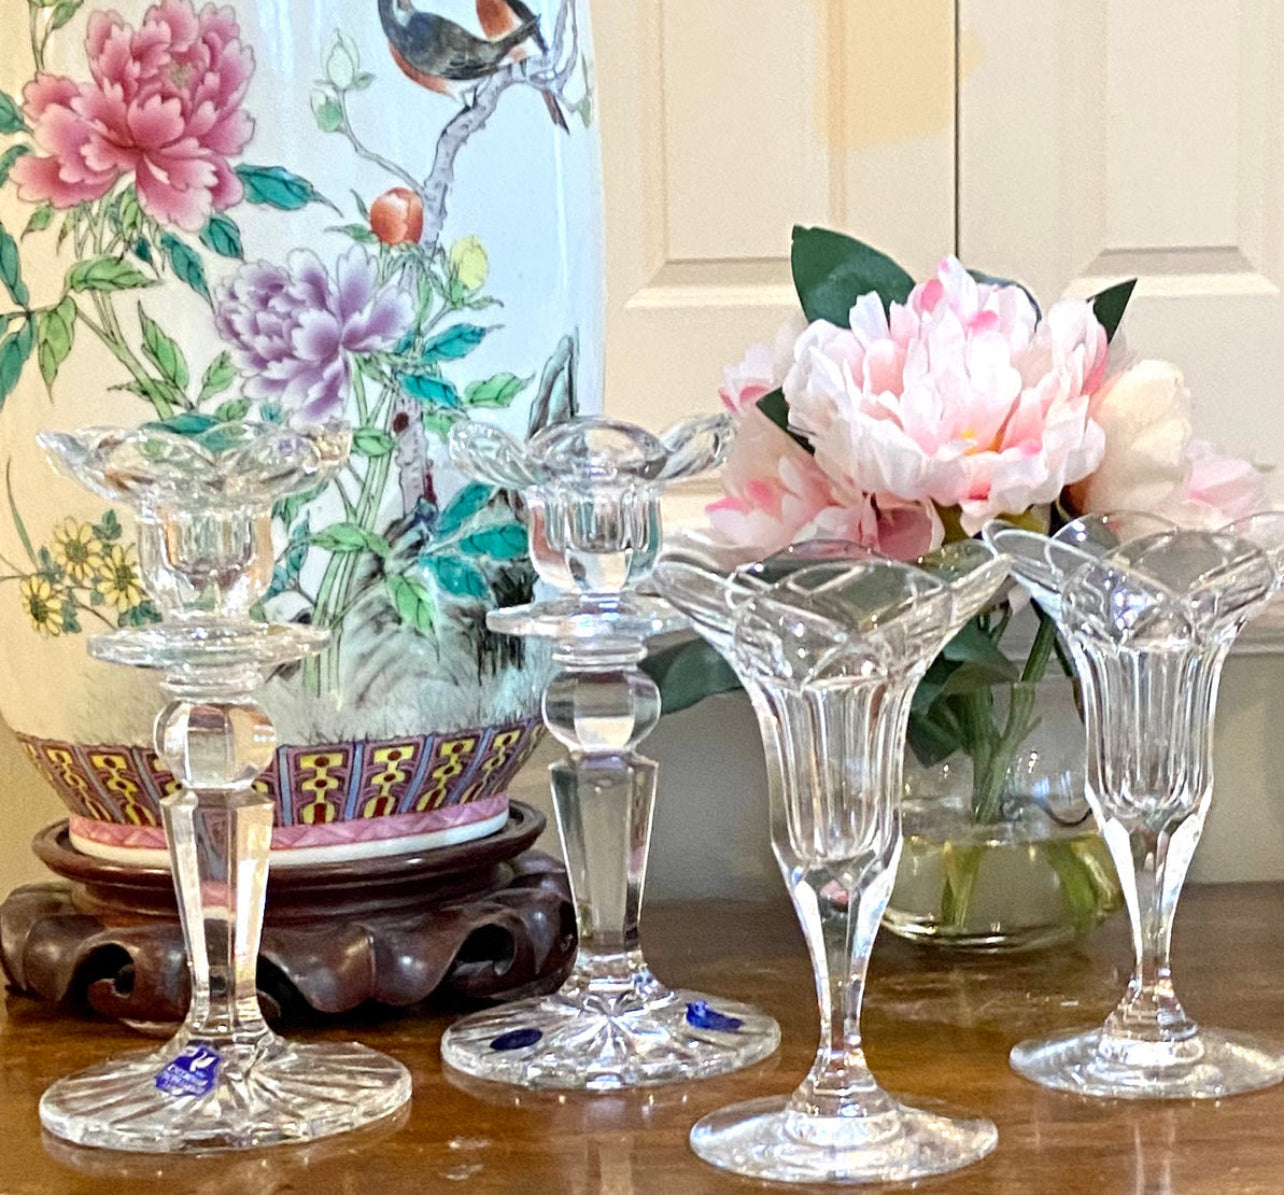 Vintage set of 4 vintage crystal tulip floral candlesticks, 7.5” tall